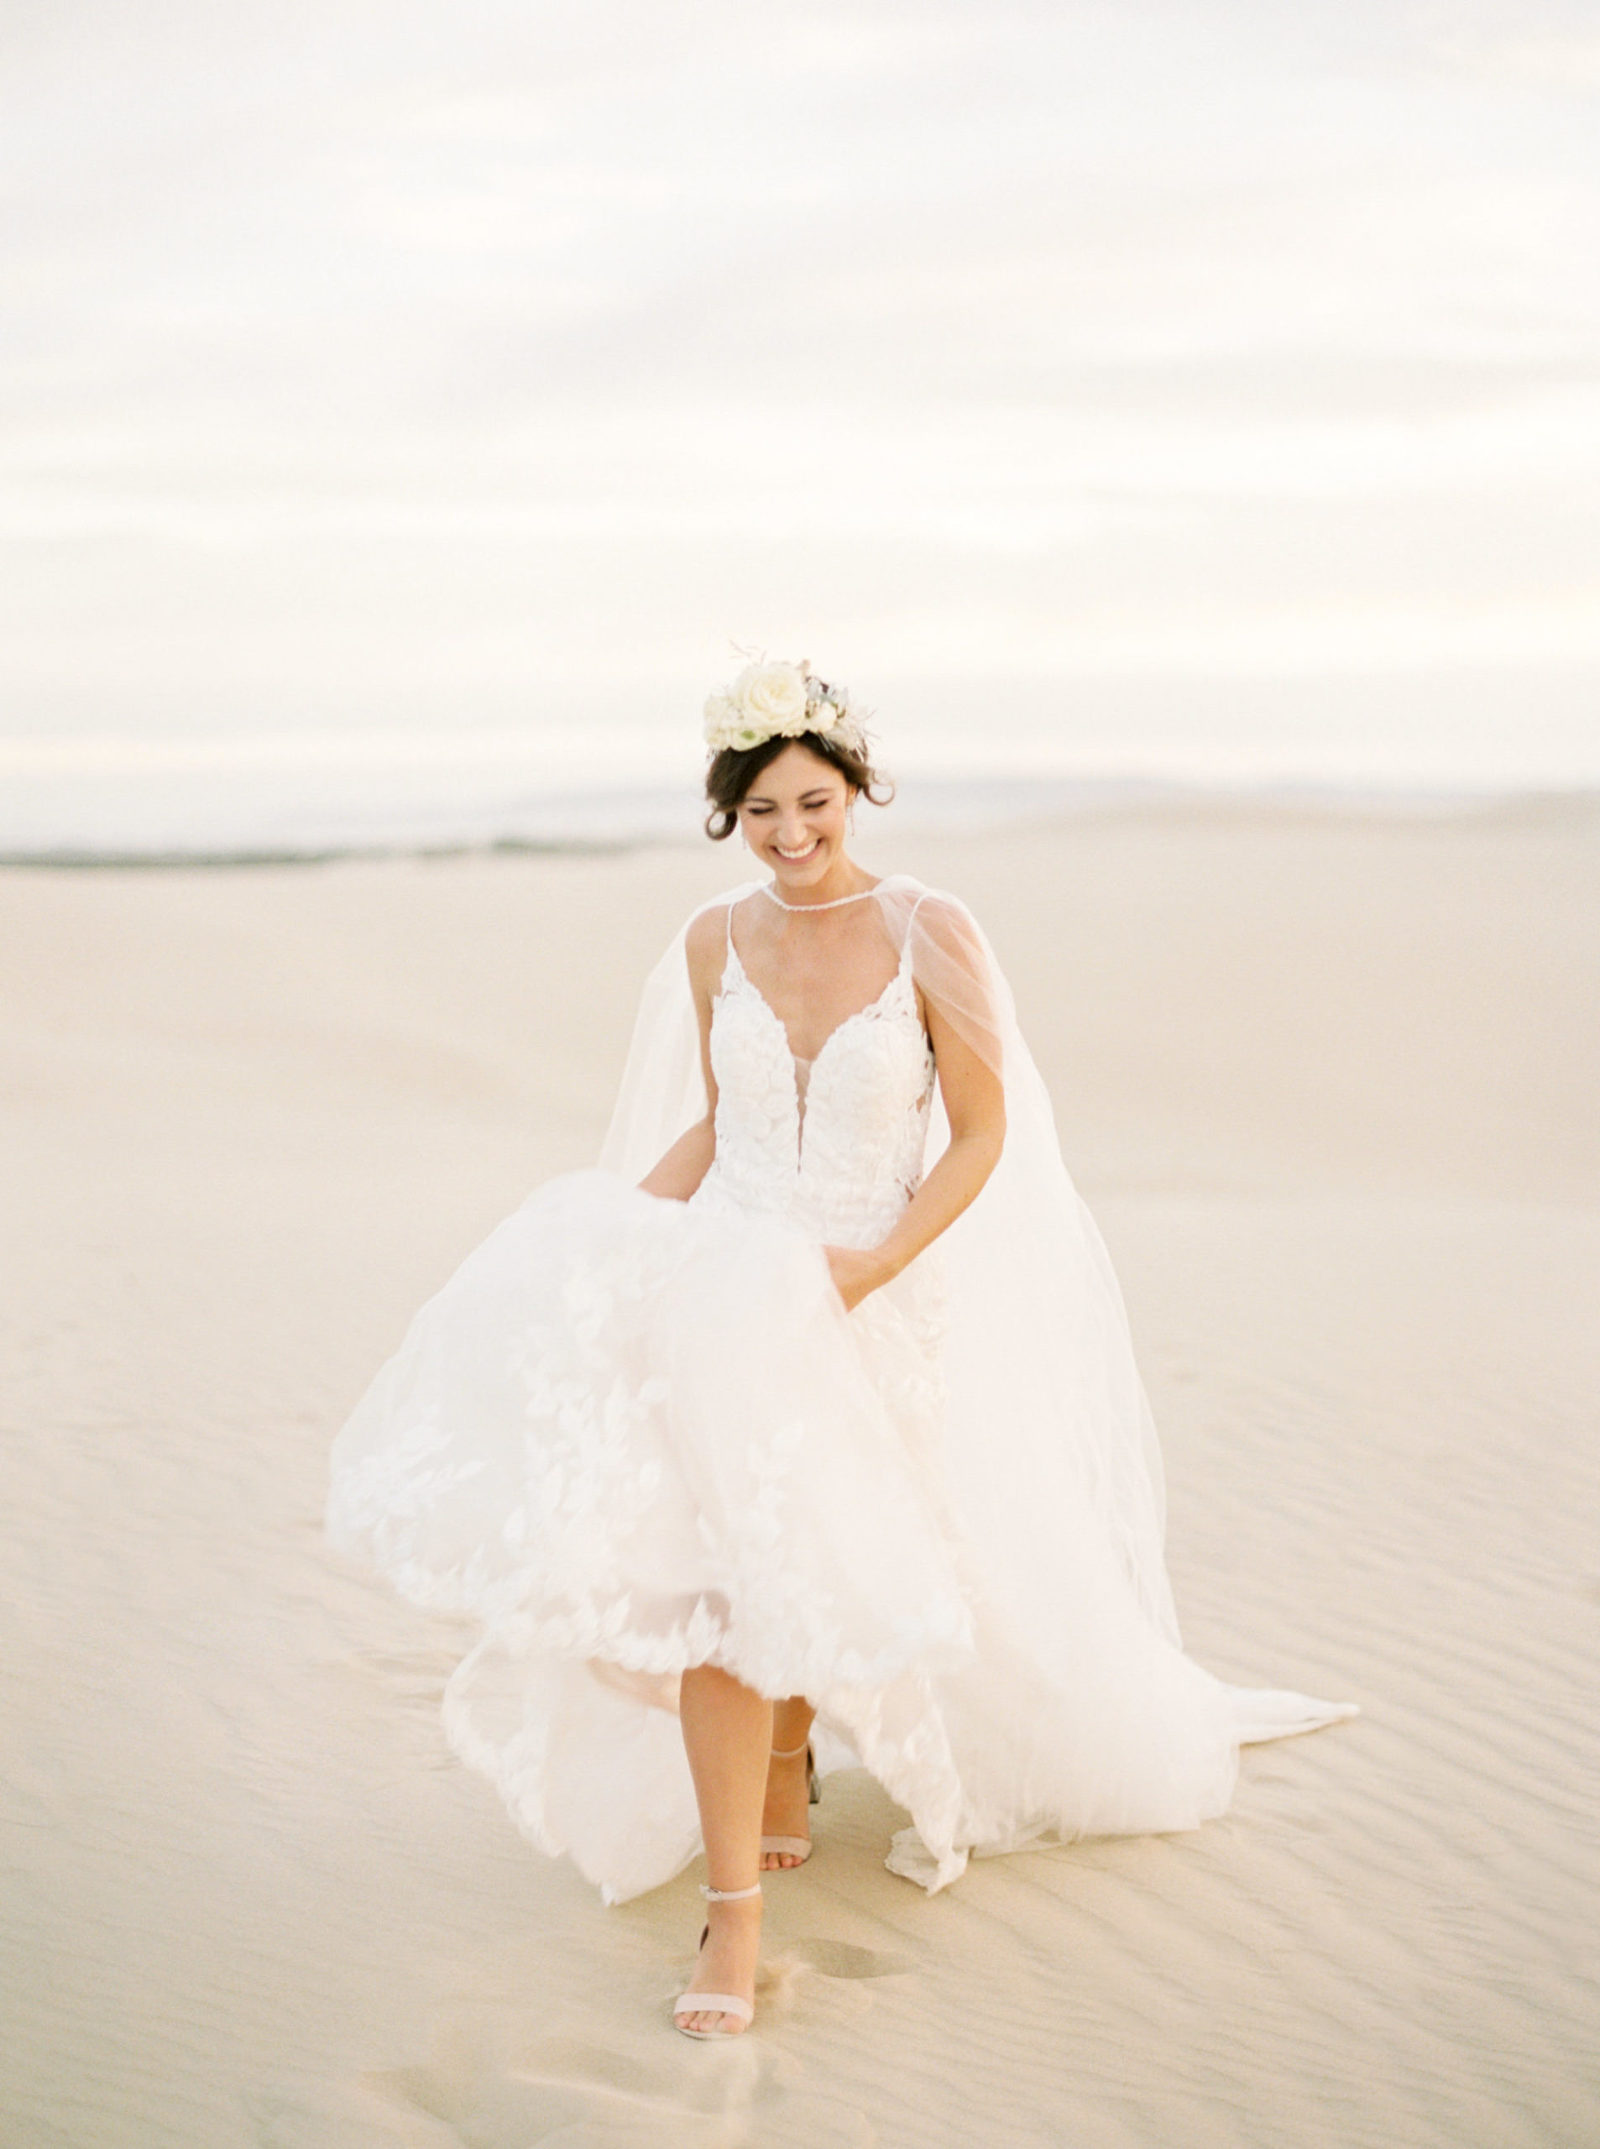 Film Bridal Photo in Dunes